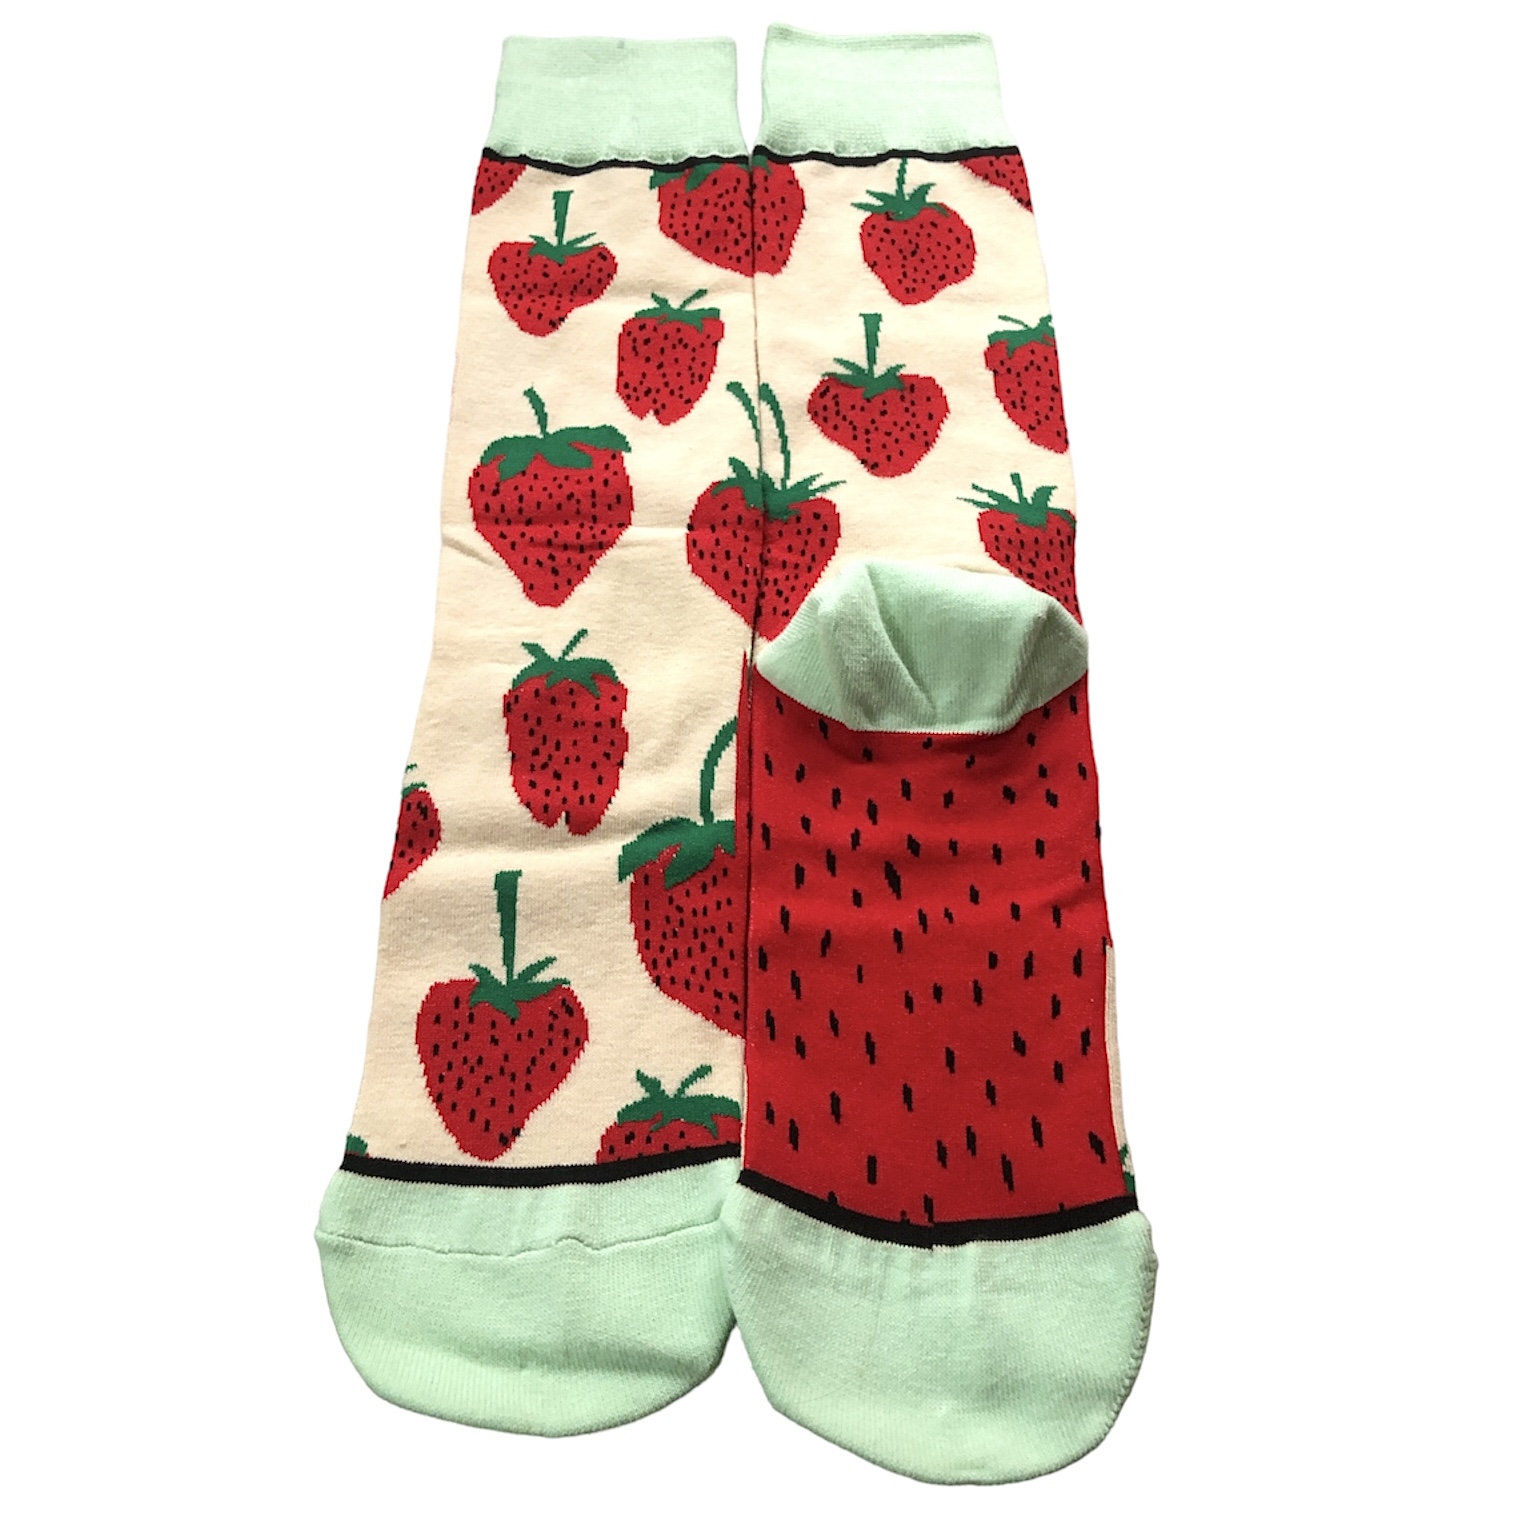 Erdbeer Socken 35-41